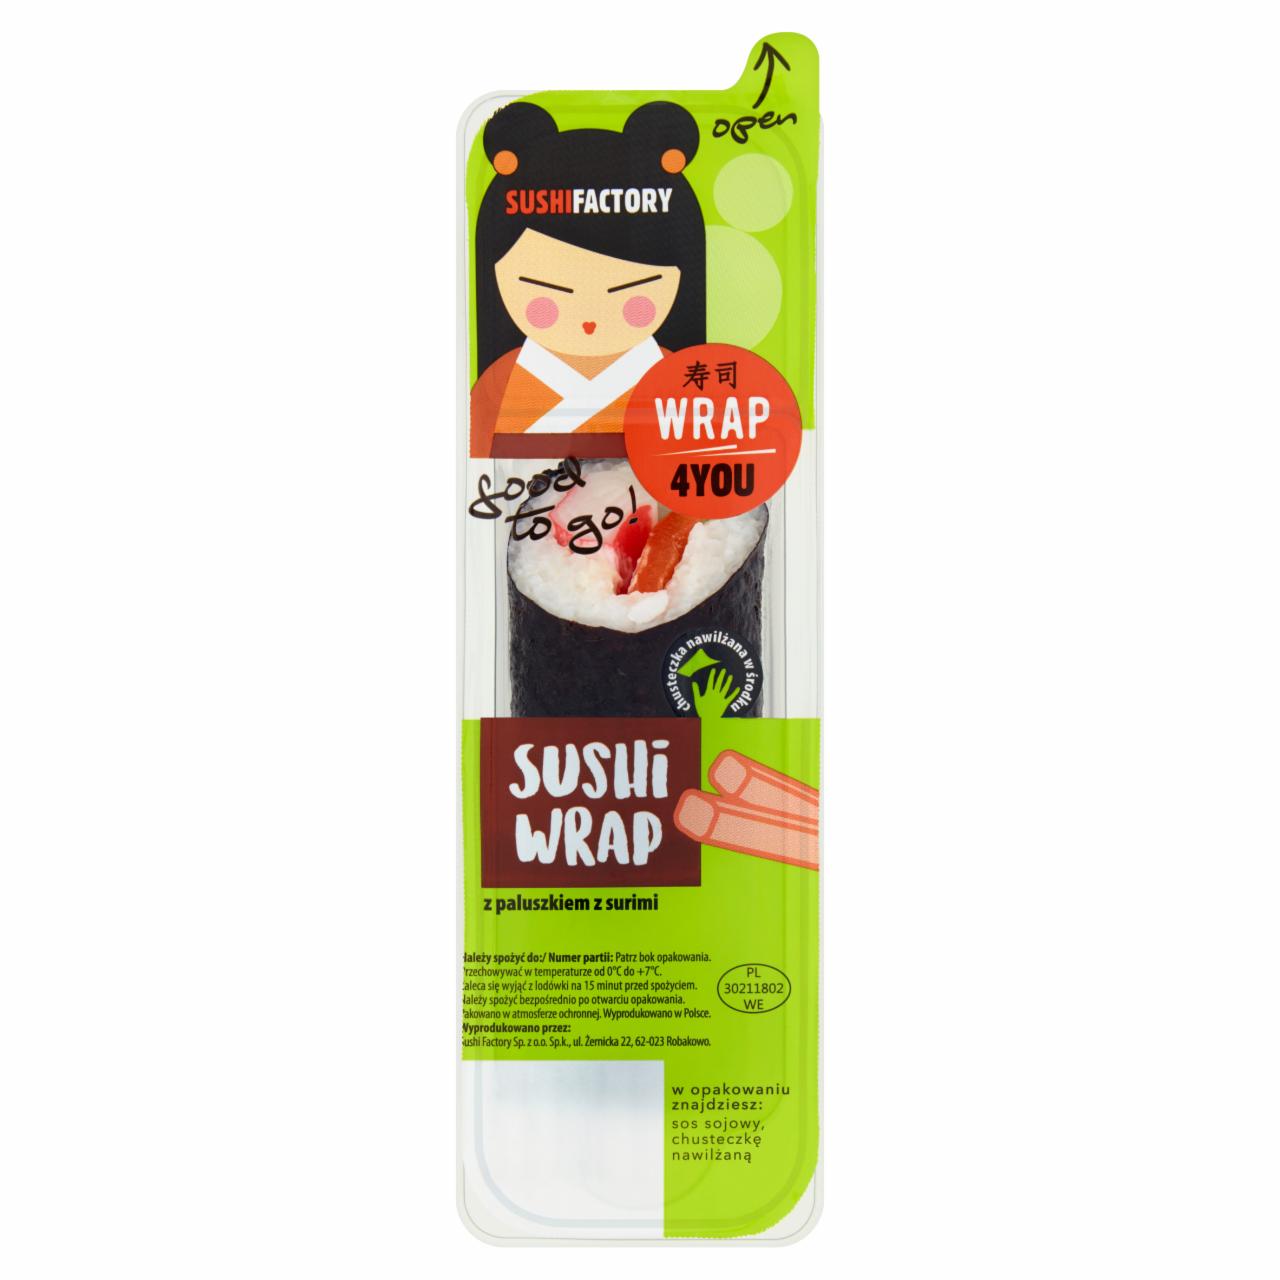 Zdjęcia - Wrap4You Sushi wrap z paluszkiem z surimi 150 g